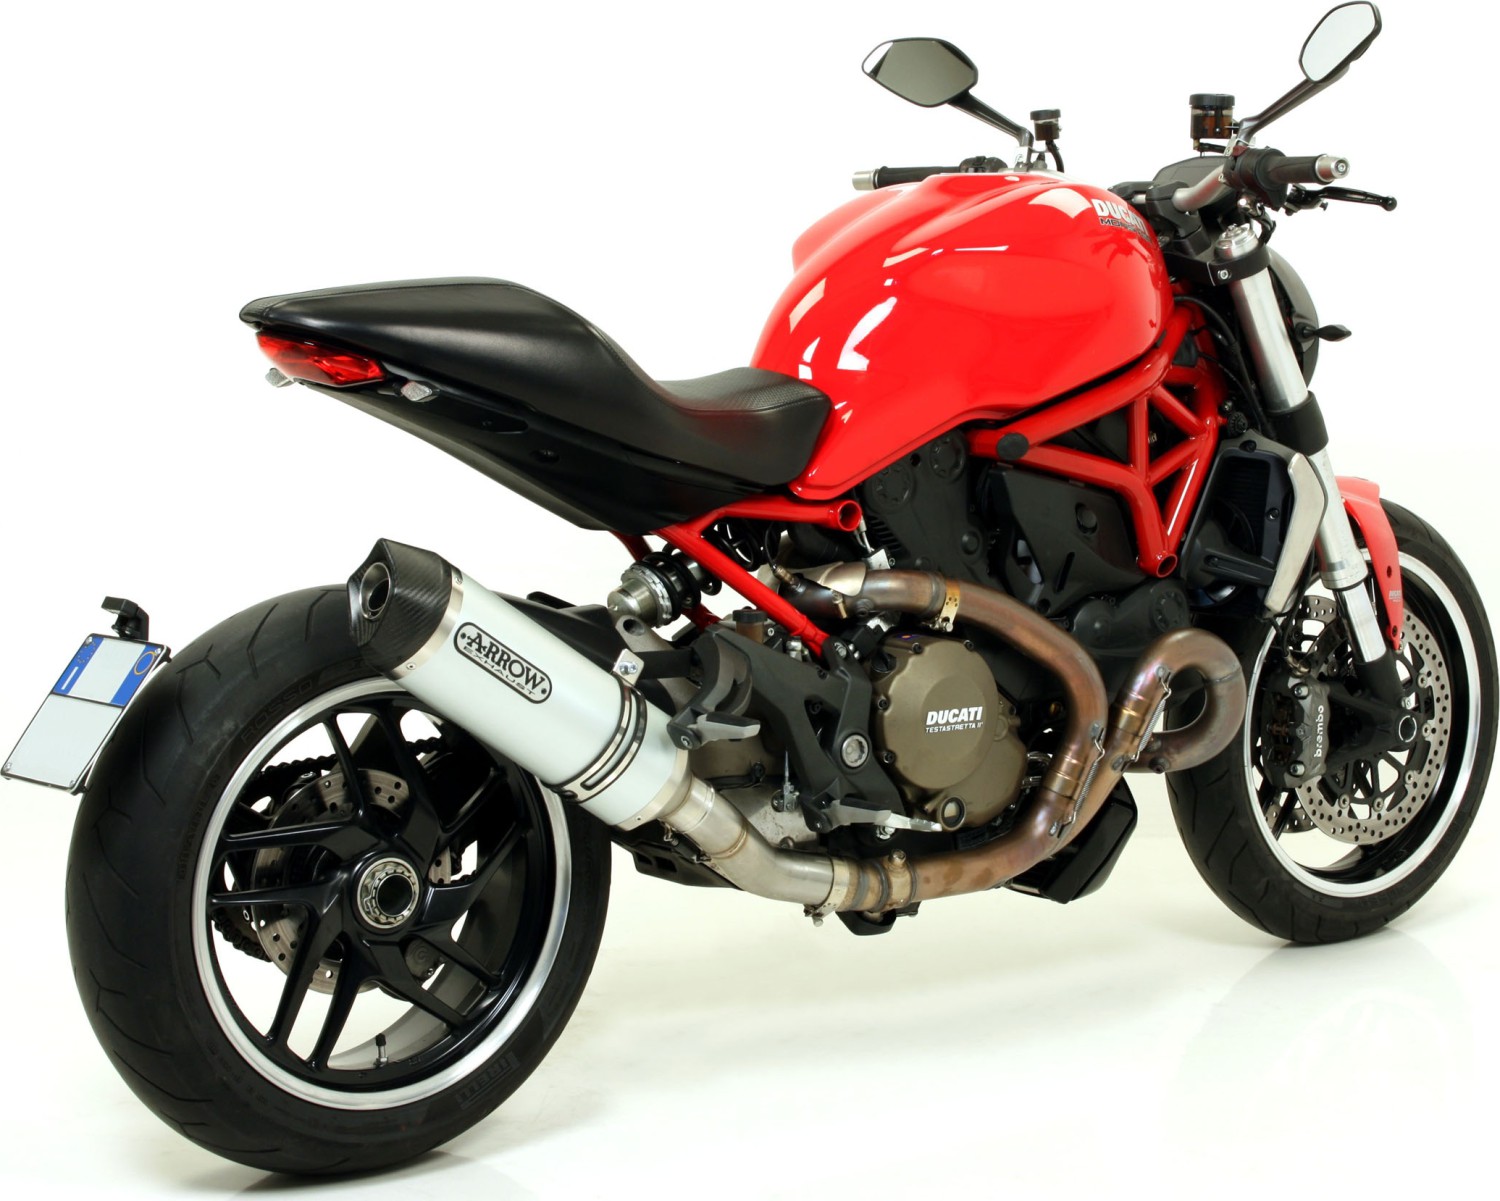  Ducati Diavel, Bj. 2011-2016 